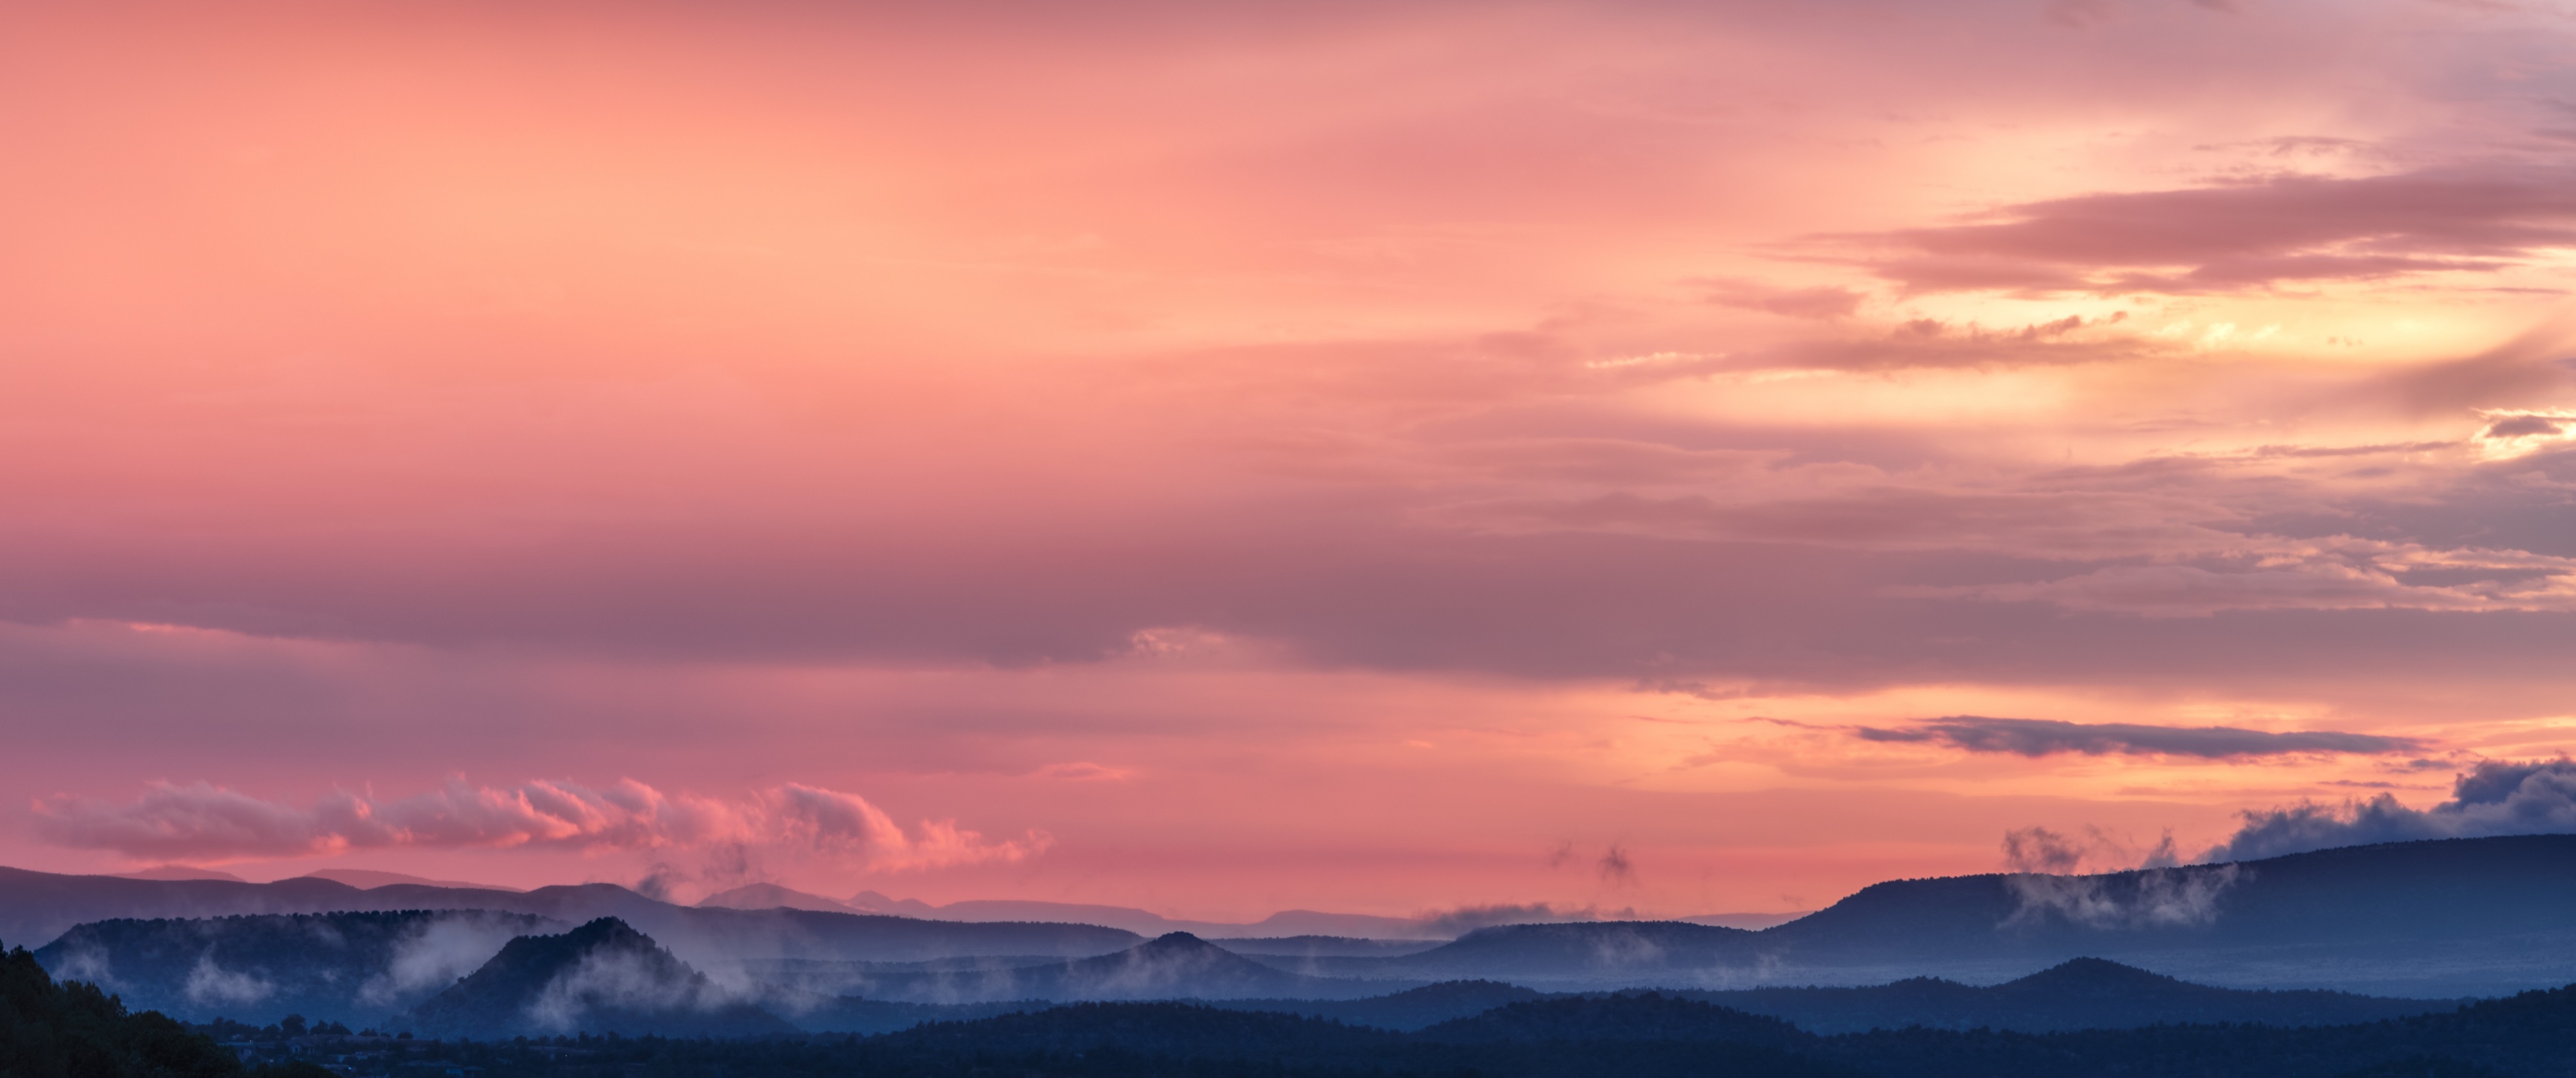 Pink sky Wallpaper 4K, Sunset, Mountains, Nature: Khám phá những bức ảnh màu hồng tràn đầy sức sống và tuyệt đẹp này. Chúng thể hiện sự kết hợp hoàn hảo giữa màu sắc và thiên nhiên, mang đến cho bạn trải nghiệm tuyệt vời mỗi khi nhìn vào điện thoại của bạn.